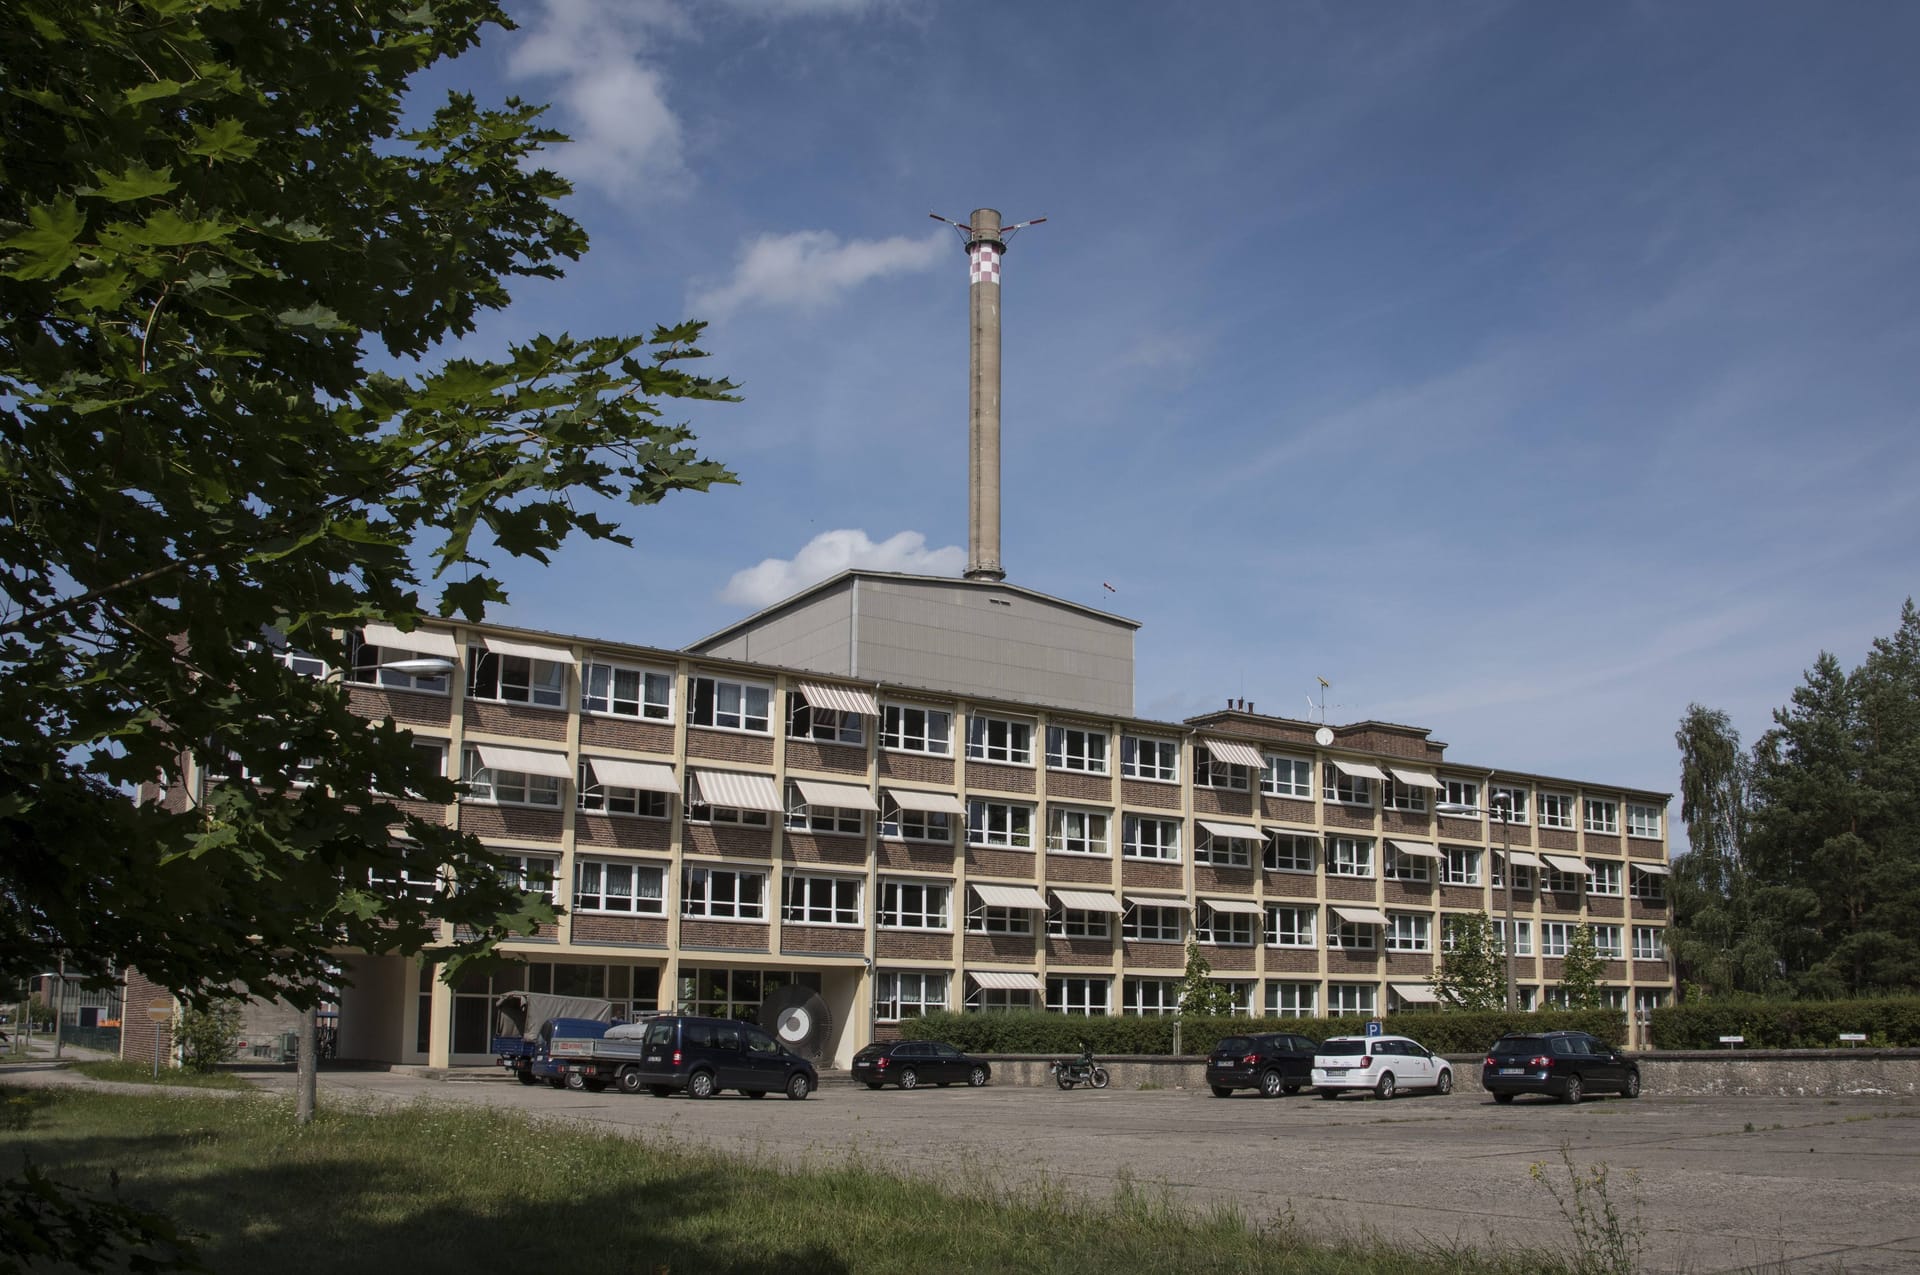 Das AKW Rheinsberg in Brandenburg war das erste Kernkraftwerk der DDR. Es ging 1966 ans Netz, wurde 1990 stillgelegt. Das Bild zeigt es 2015, während des Rückbaus.